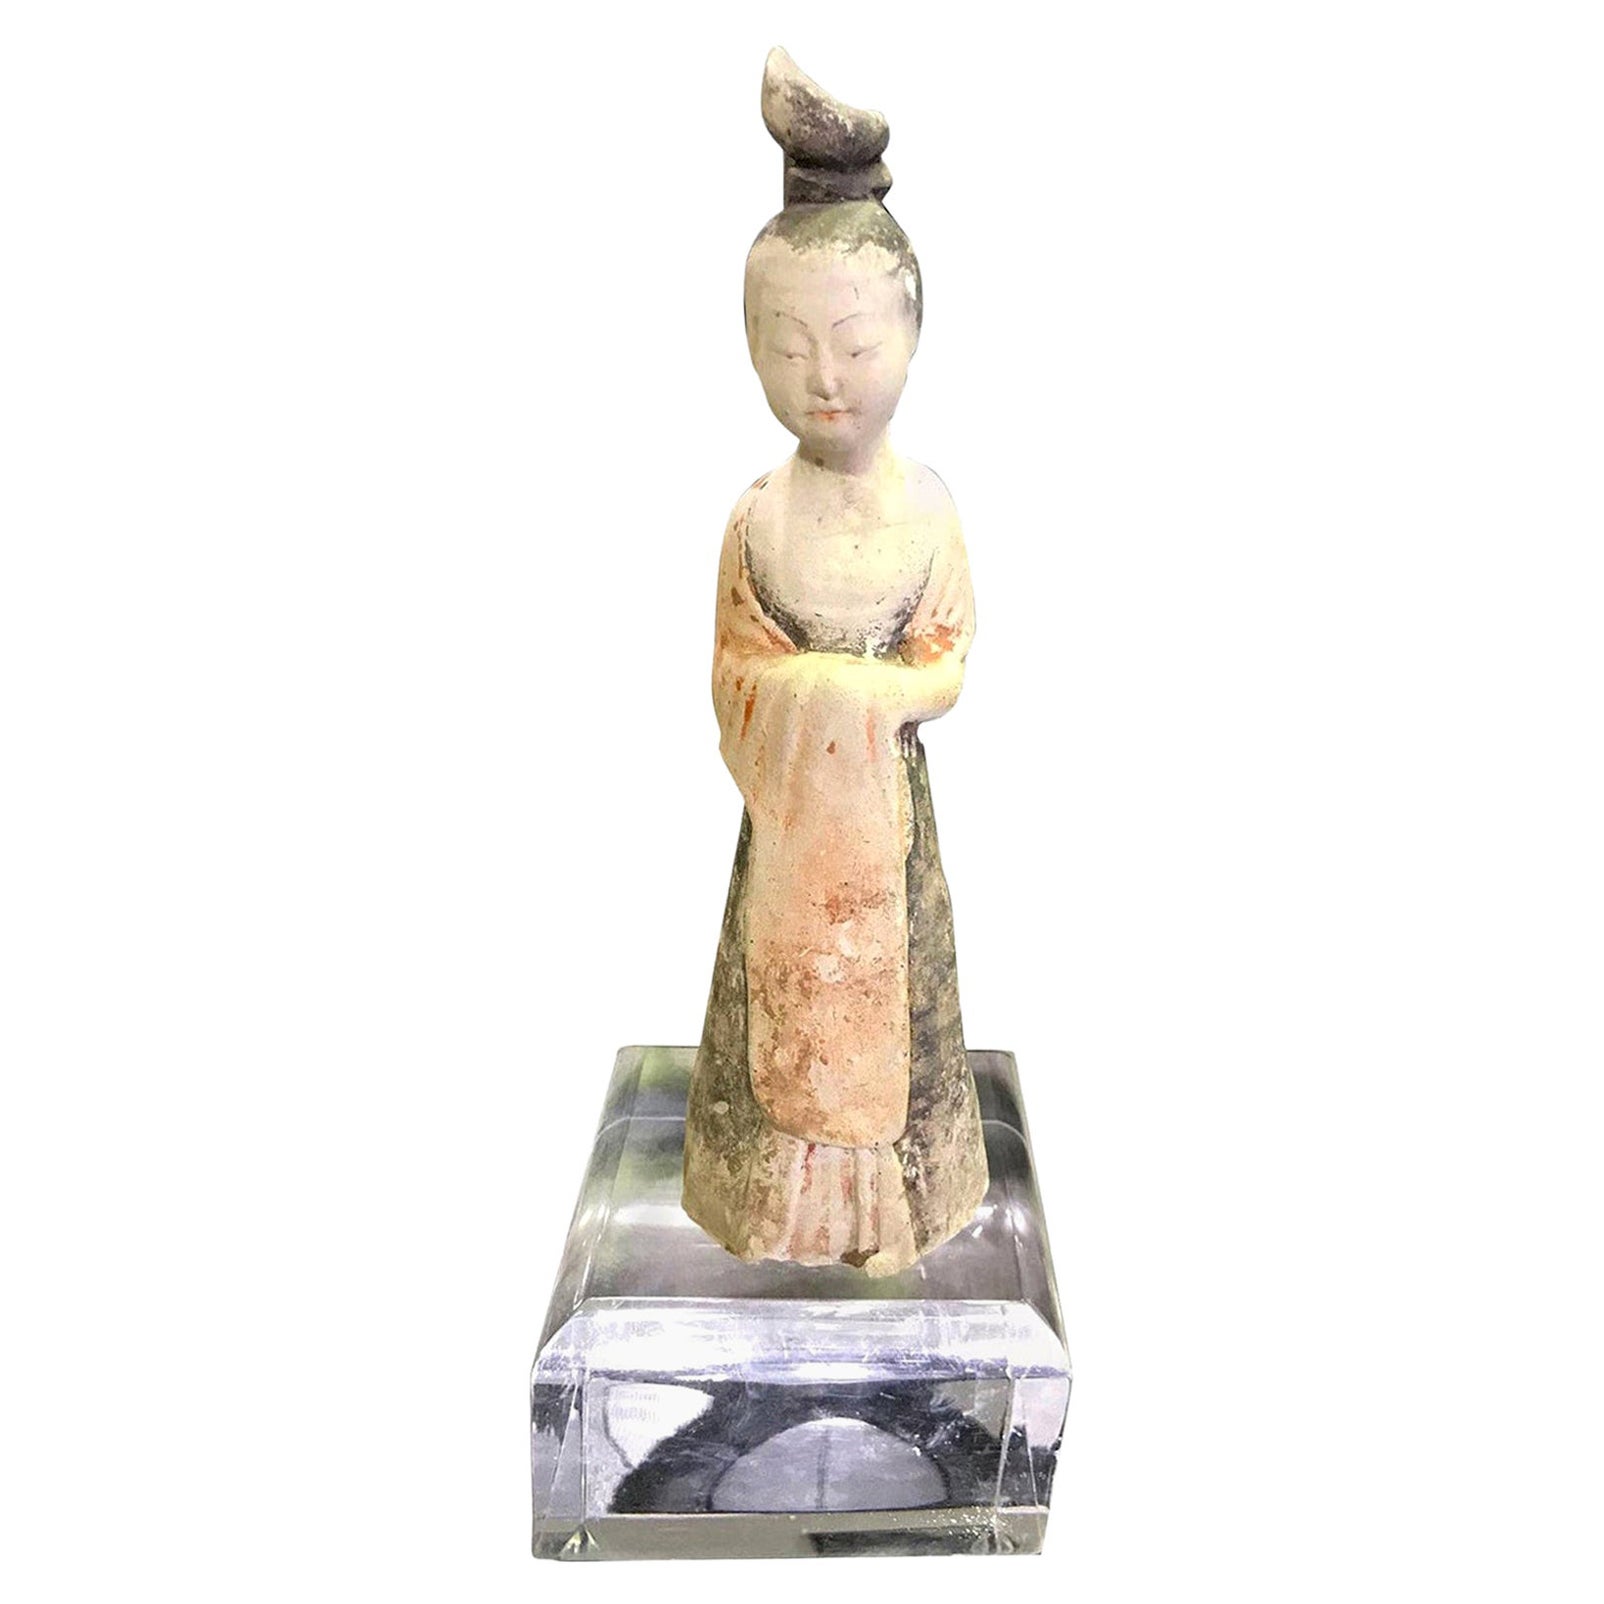 Glasierte Schlammfigur der Hof Lady Tang-Dynastie mit Ständer aus chinesischer Keramik